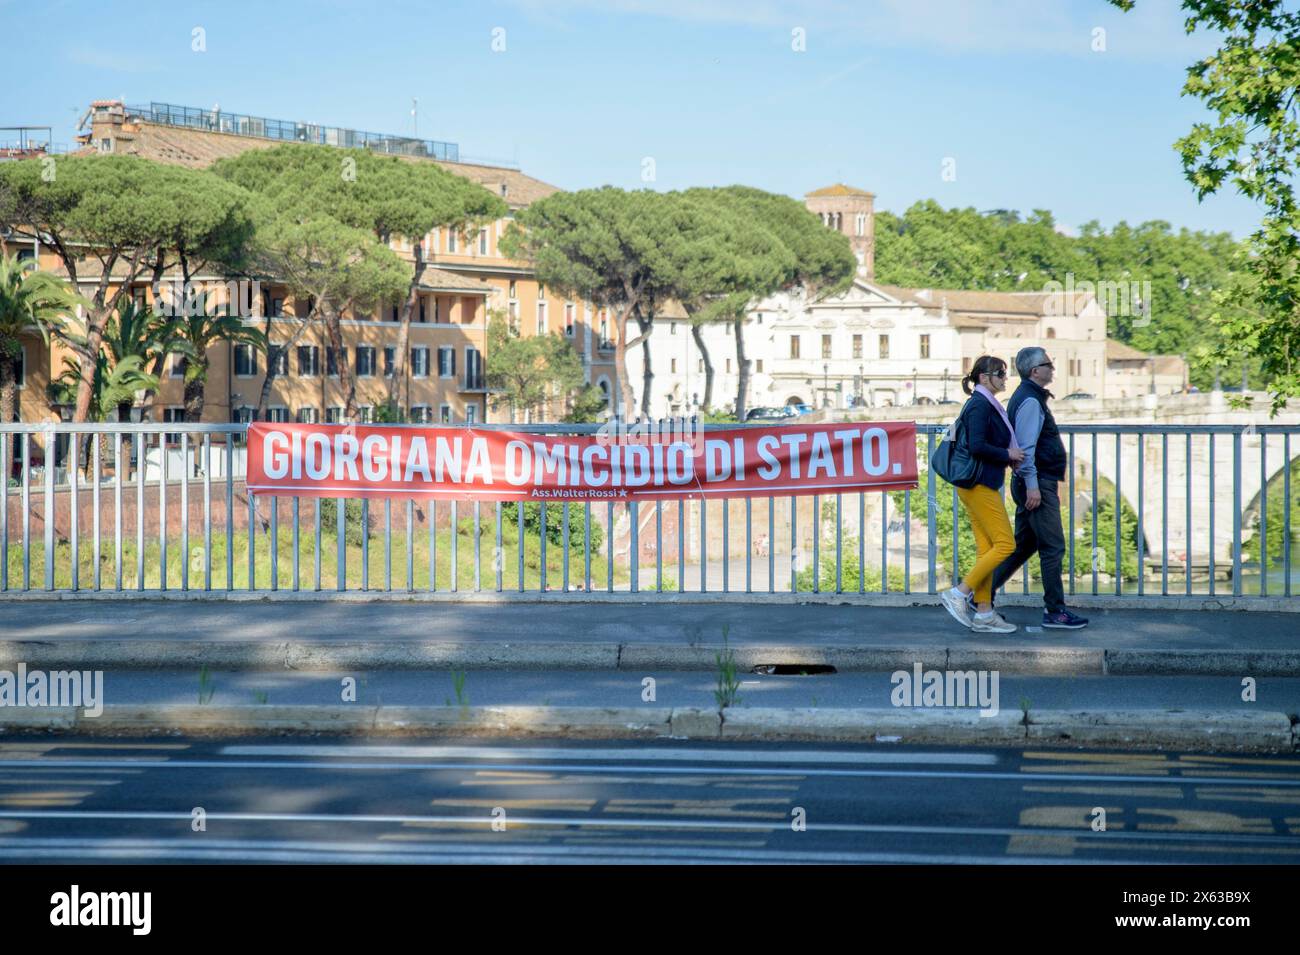 Roma, Italia. 12 maggio 2024. Un grande vessillo con le parole "assassinio di Stato Giorgiana" è stato appeso sul parapetto di Ponte Garibaldi in occasione dell'anniversario dell'uccisione di Giorgiana Masi a Roma. Giorgiana Masi, una studentessa di 19 anni, è stata uccisa a Roma vicino a Ponte Garibaldi, colpita da un proiettile sparato da dietro, apparentemente dalla polizia, il 12 maggio 1977 durante una manifestazione non autorizzata sull'anniversario della vittoria del referendum sul divorzio. L'omicidio e' ancora senza colpevoli. (Credit Image: © Marcello Valeri/ZUMA Press Wire) SOLO PER USO EDITORIALE! Non per USO commerciale! Foto Stock